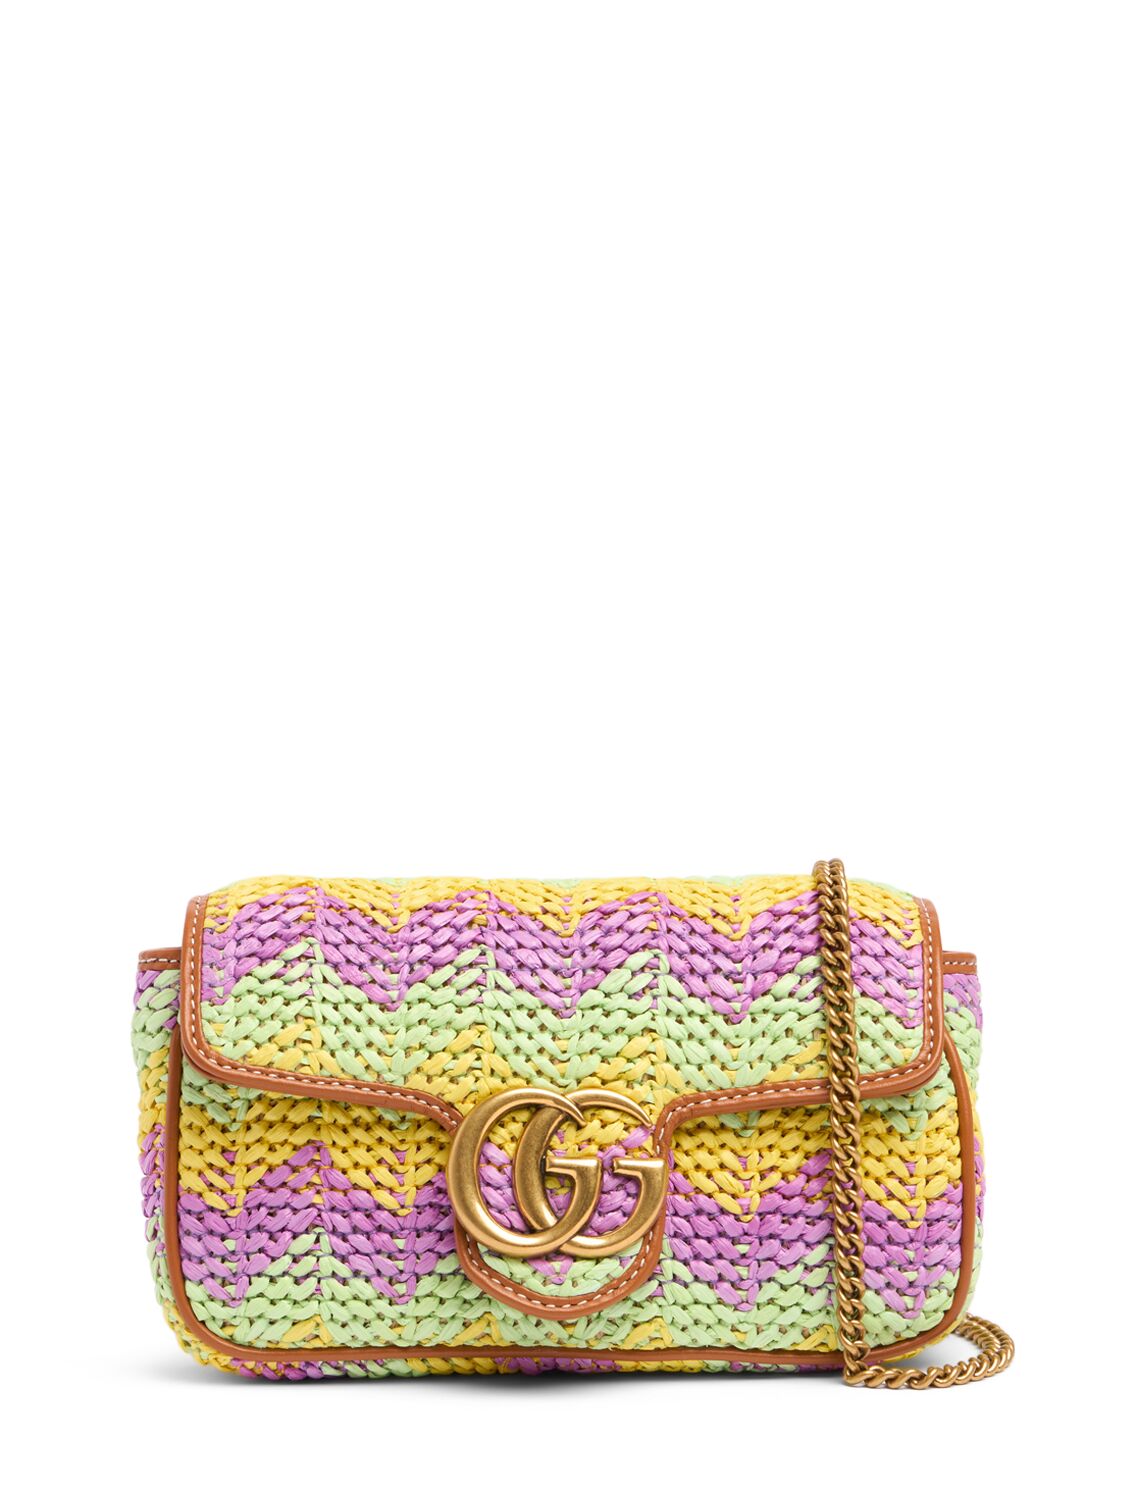 Gucci Mini Summertime Crochet Bag In Multicolor